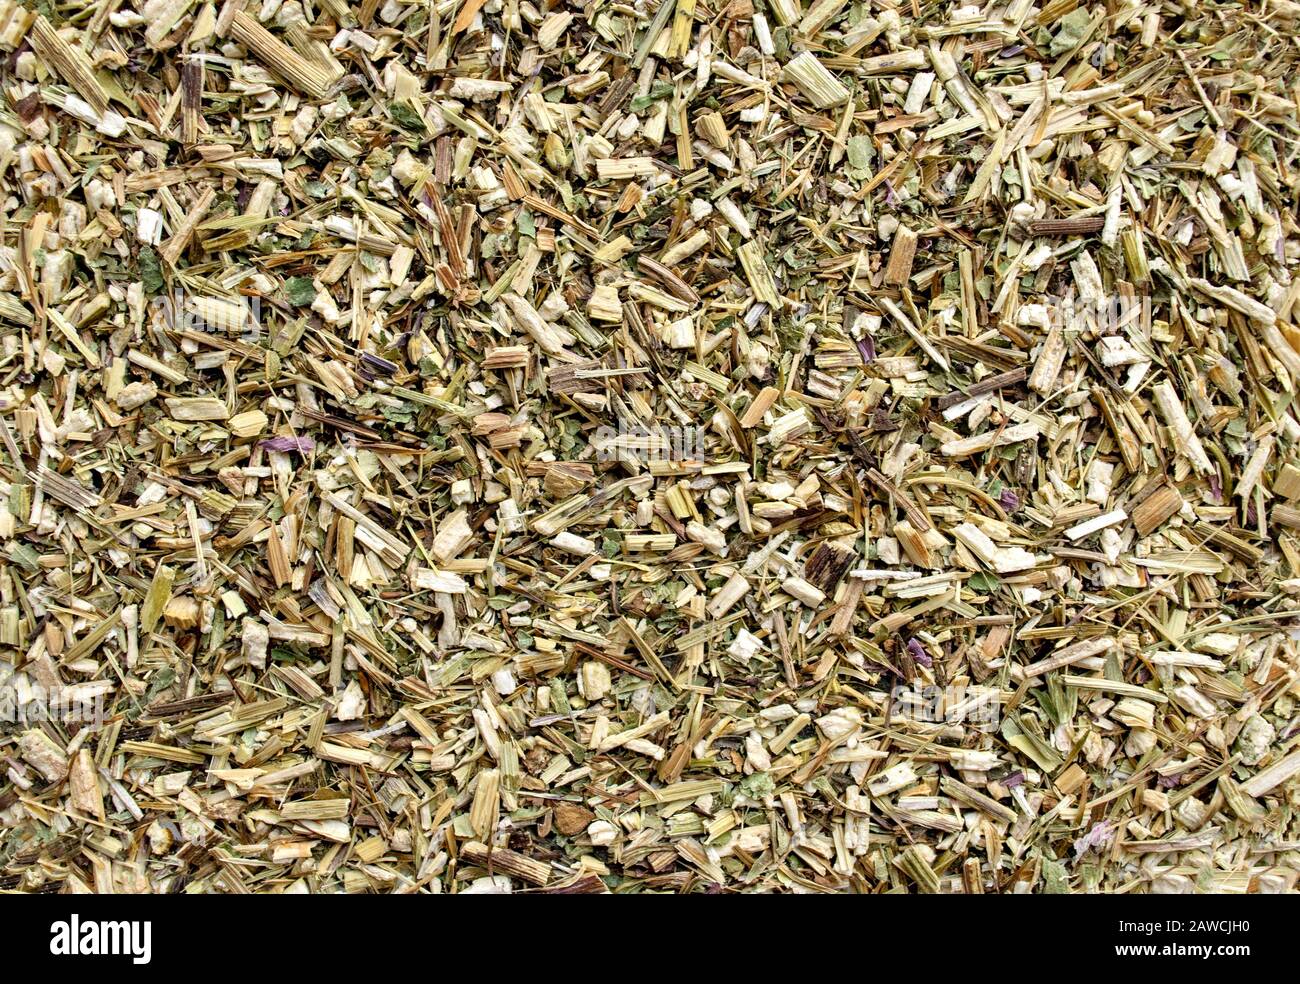 Hintergrund aus getrocknetem Echinacea Kraut für den medizinischen Gebrauch. Echinacea getrocknete Blumen Hintergrund. Echinacea Wurzelkraut, das in der alternativen Kräutermedizin verwendet wird Stockfoto